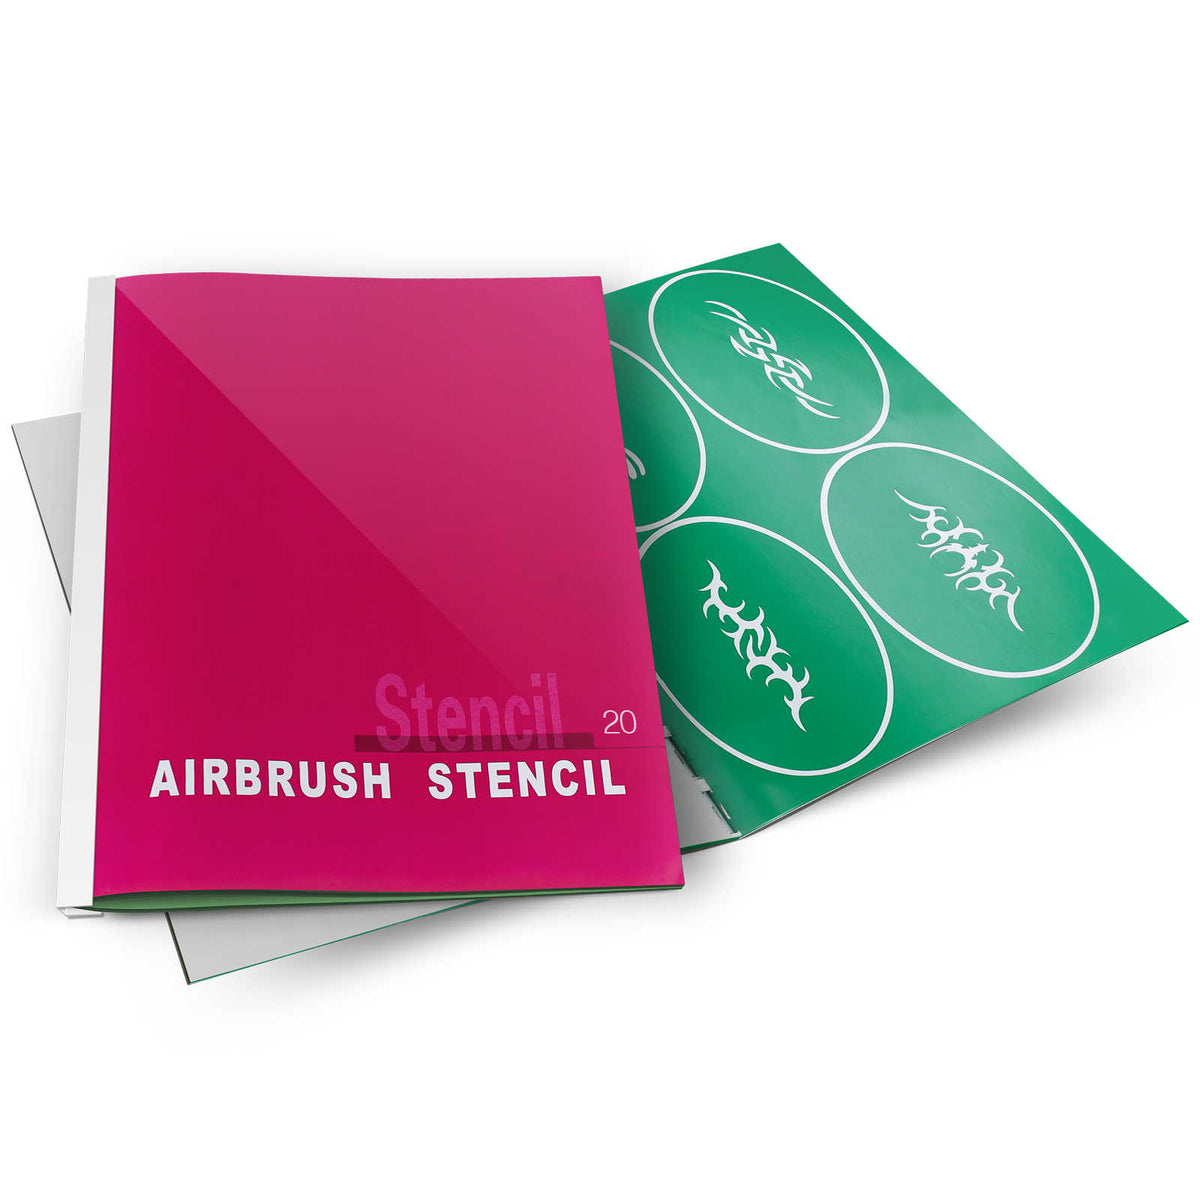 Airbrush Hose, Stencil Supplies